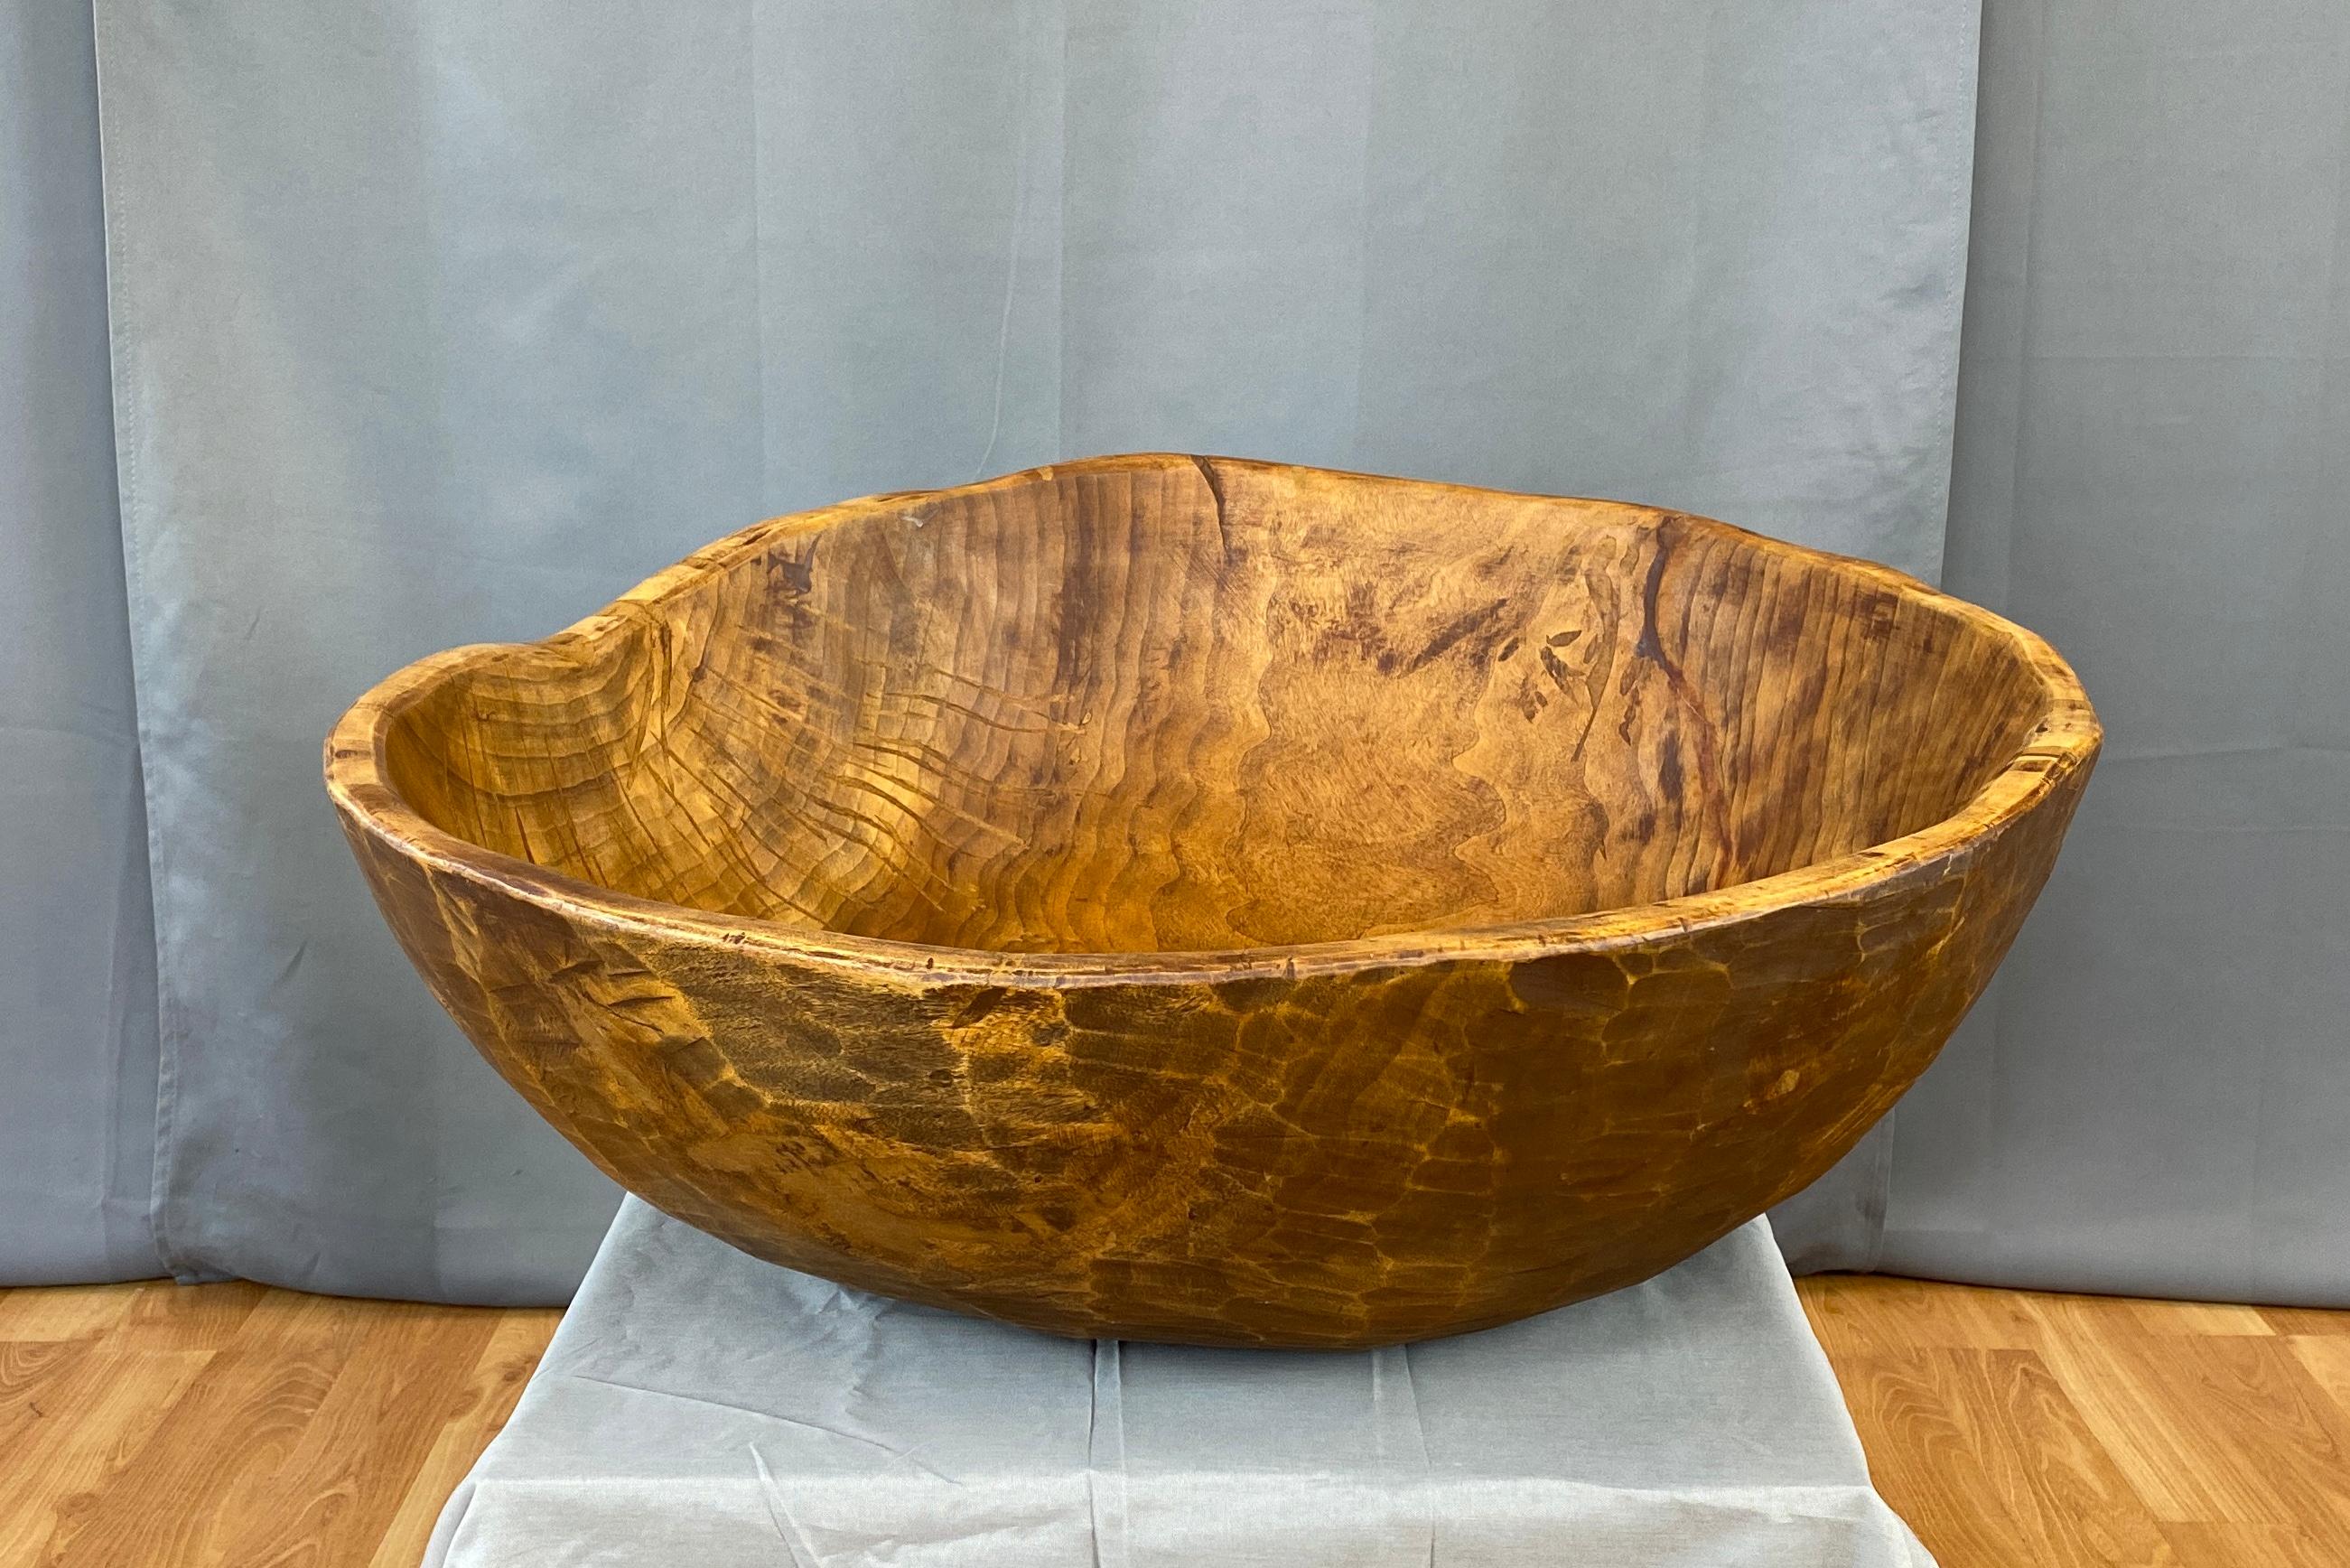 Nous vous proposons un très grand bol en bois sculpté à la main datant de la fin du 20e siècle.
Cette taille peu commune a dû demander à l'artisan de nombreuses semaines de travail, avec beaucoup de soin, pour sculpter cette seule pièce de